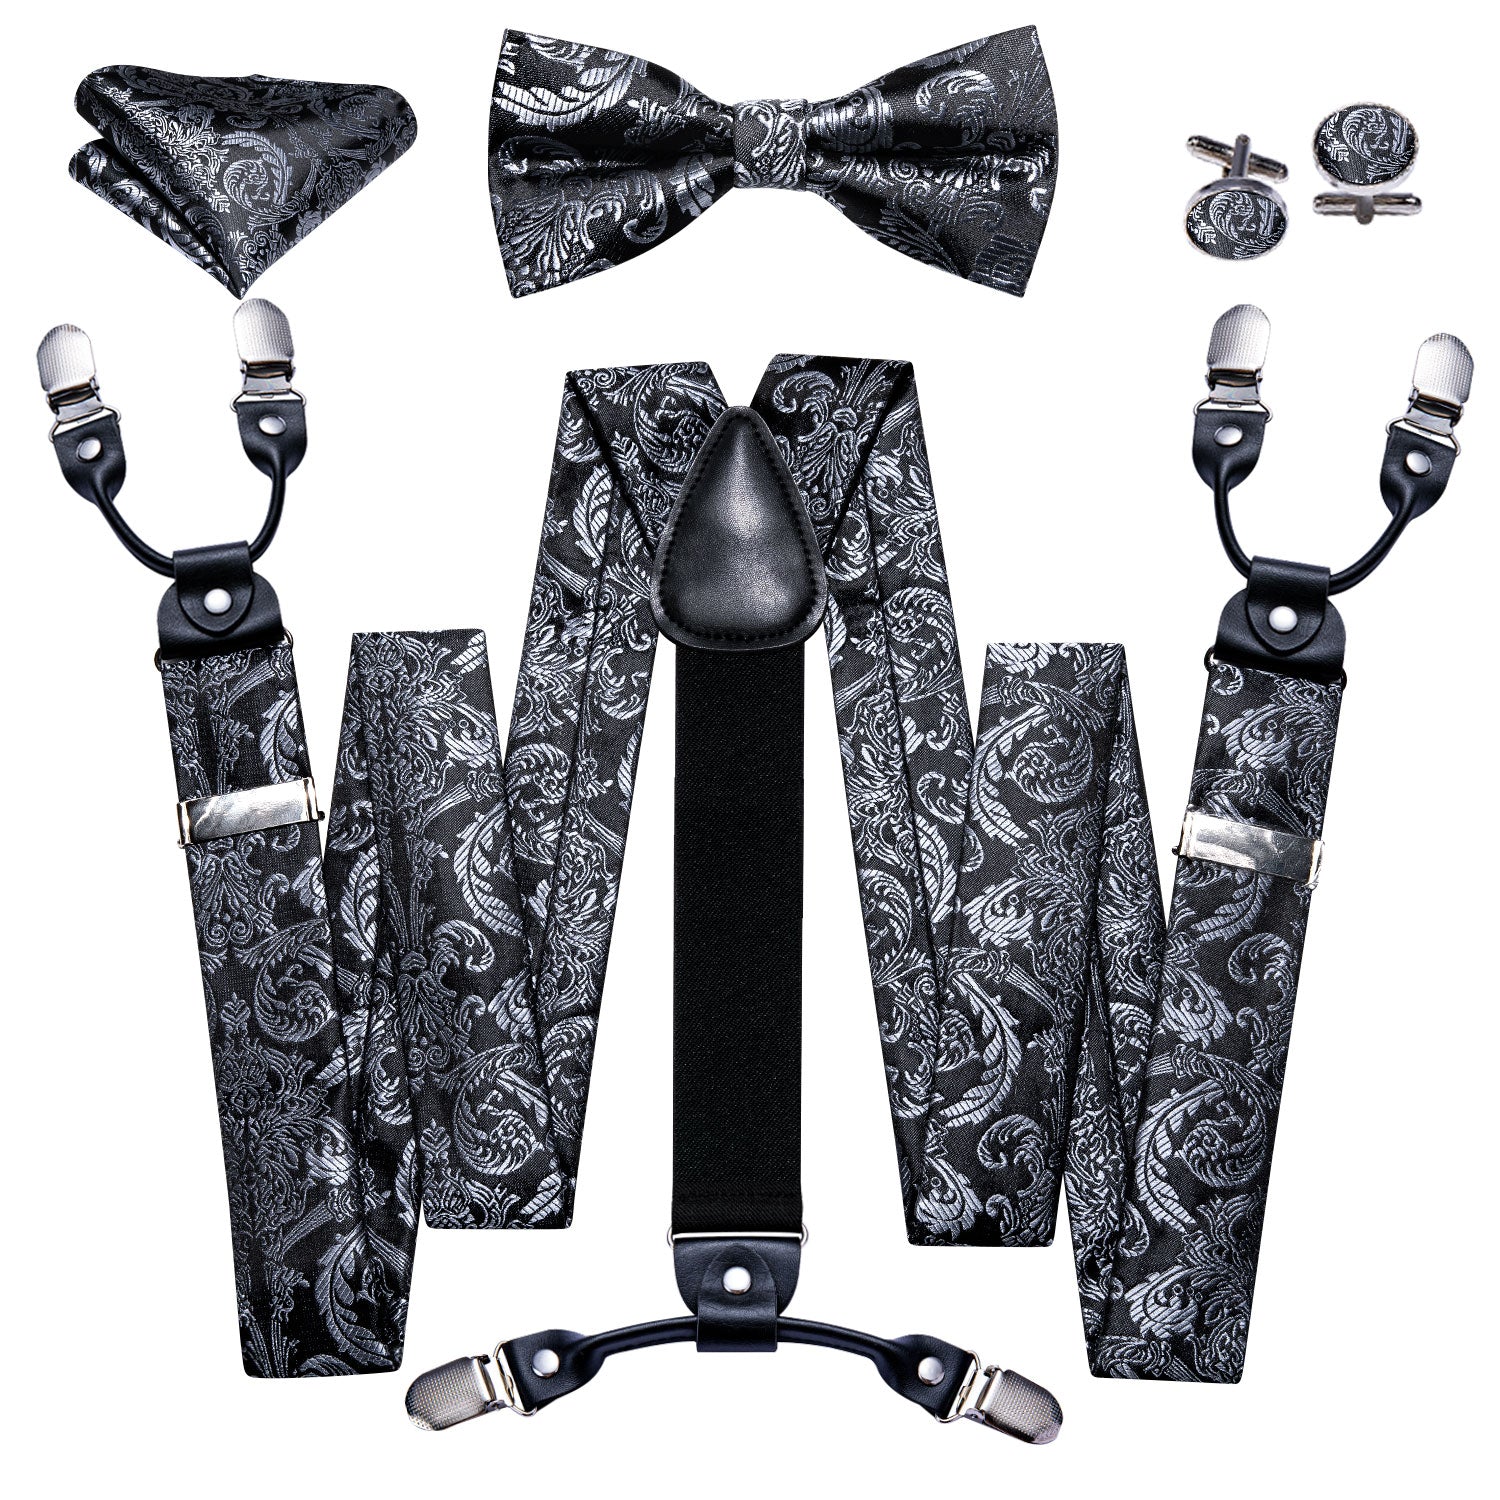 Whgirl] Adjustable Y Back Brace Men Suspenders Bowtie Set with Clips Heavy  Duty Pants Suspender Tuxedo Suspenders Halloween